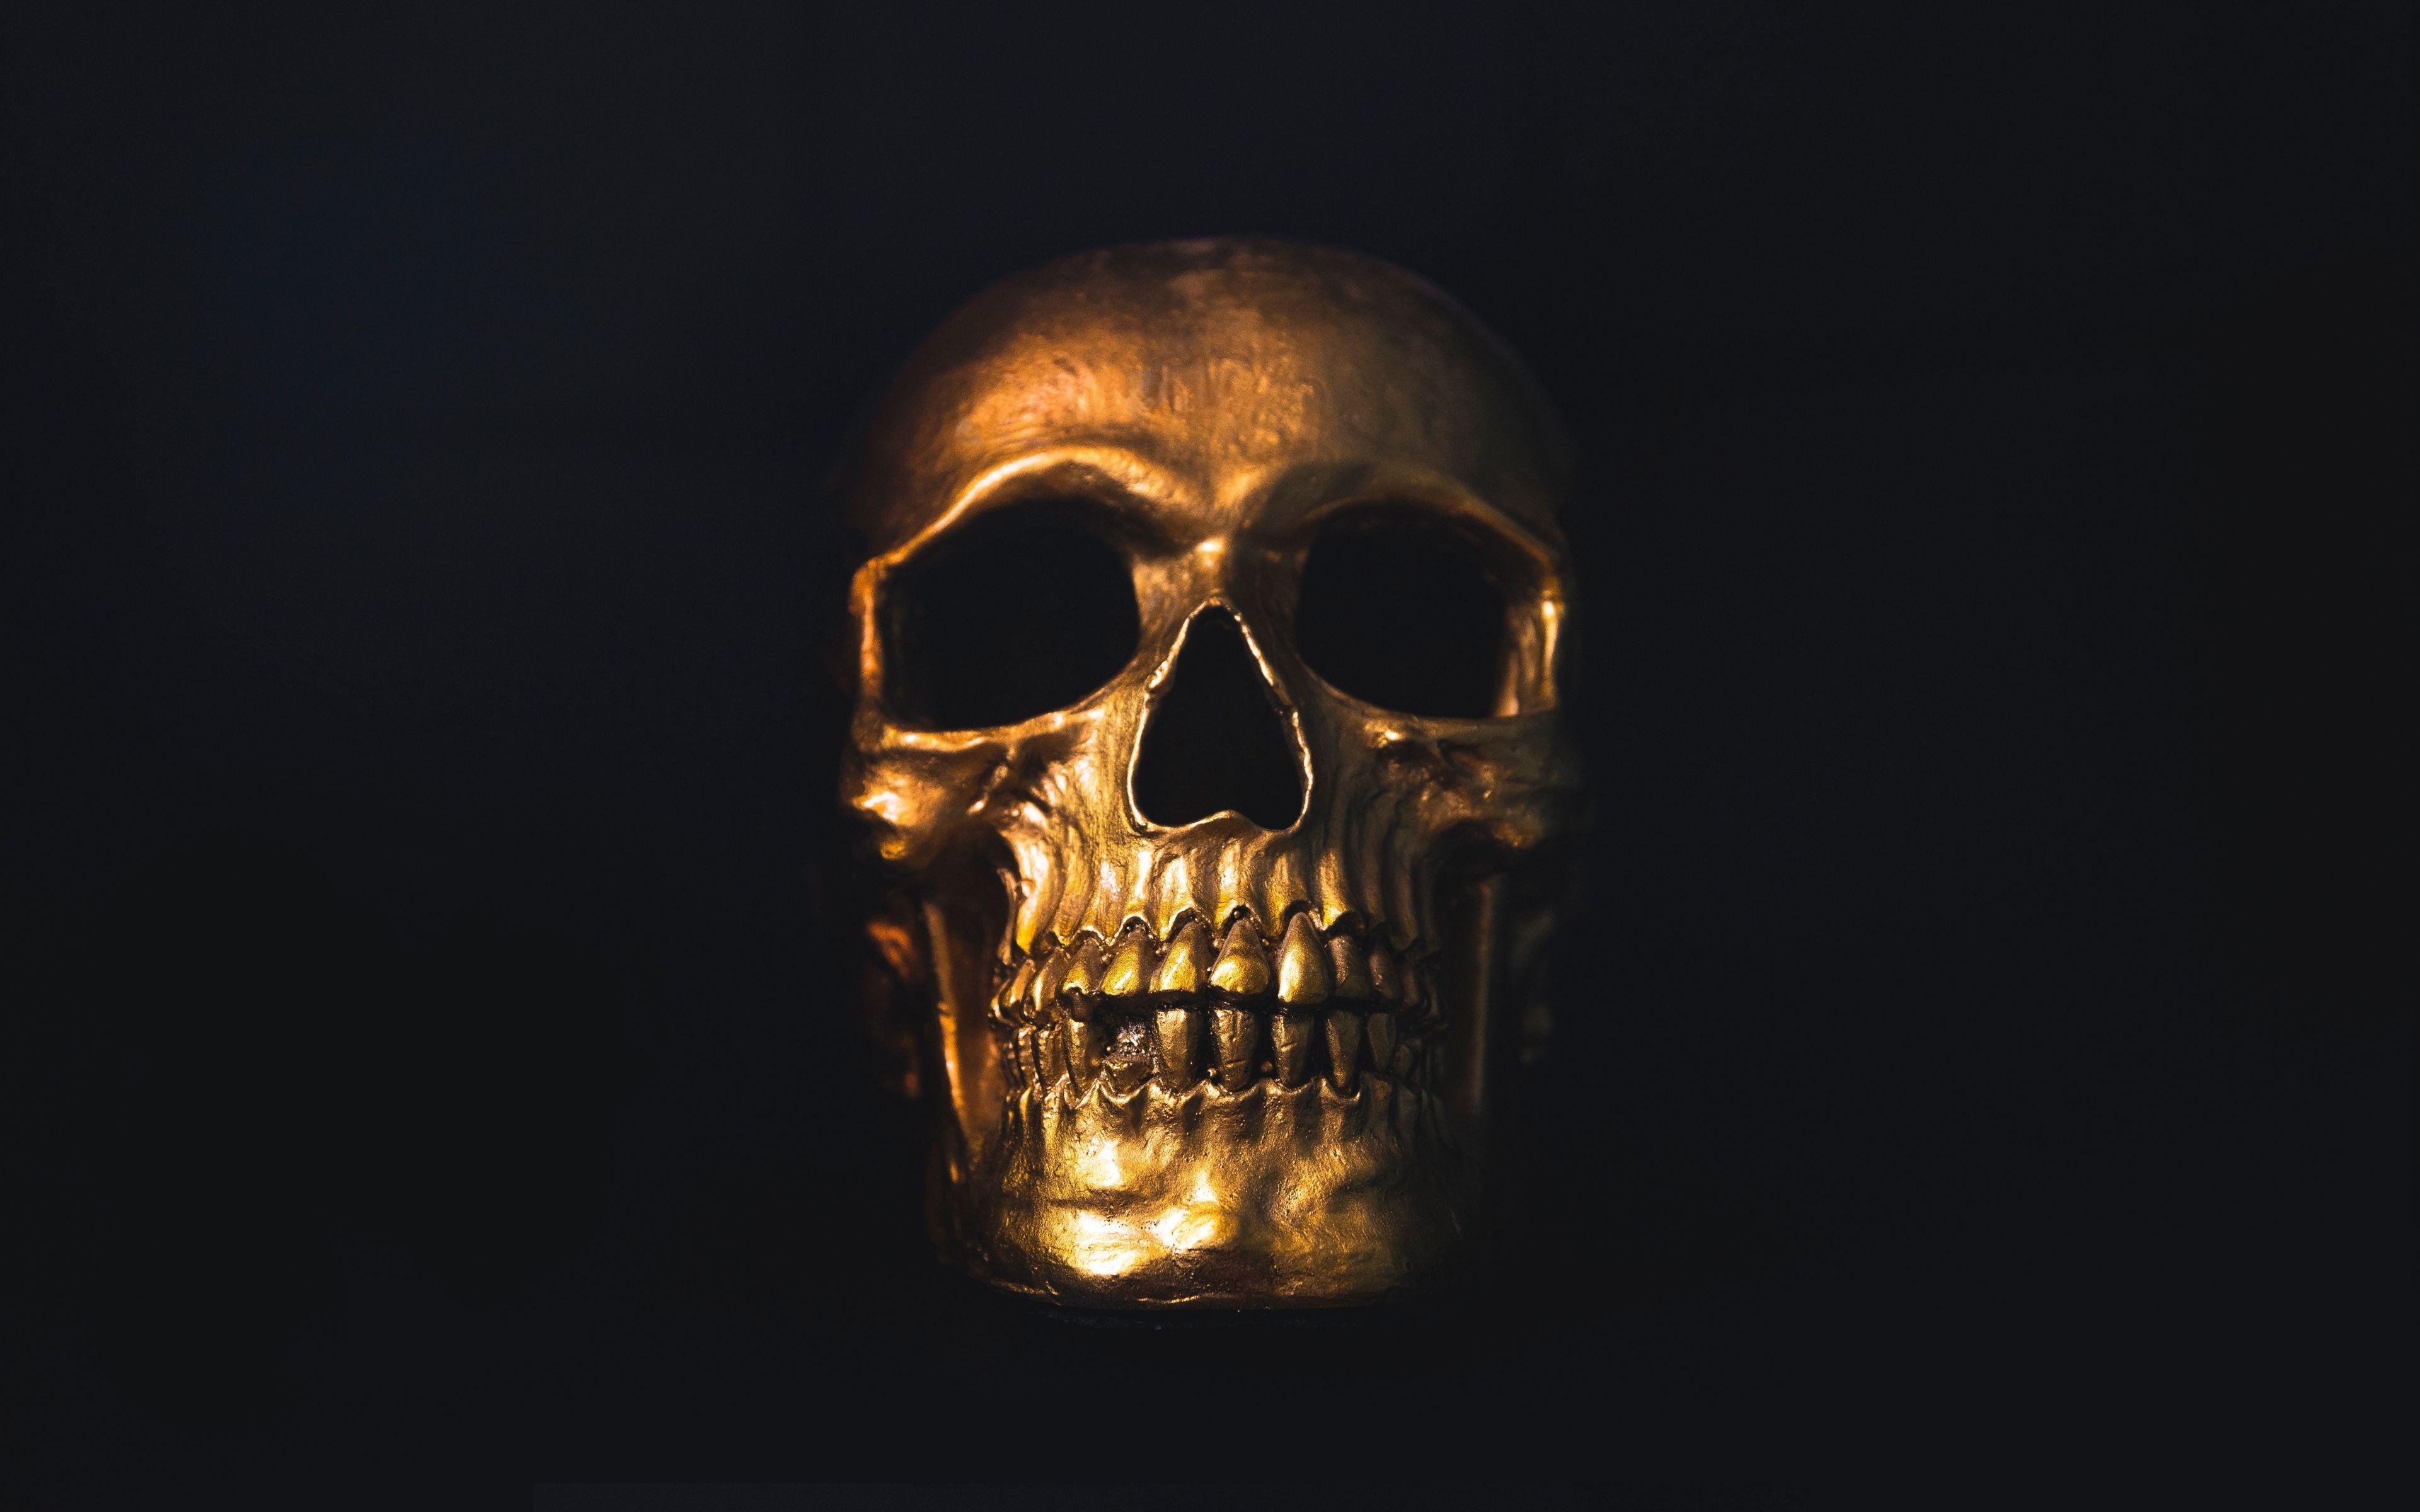 4K Ultra HD Skull Wallpaper Free 4K Ultra HD Skull